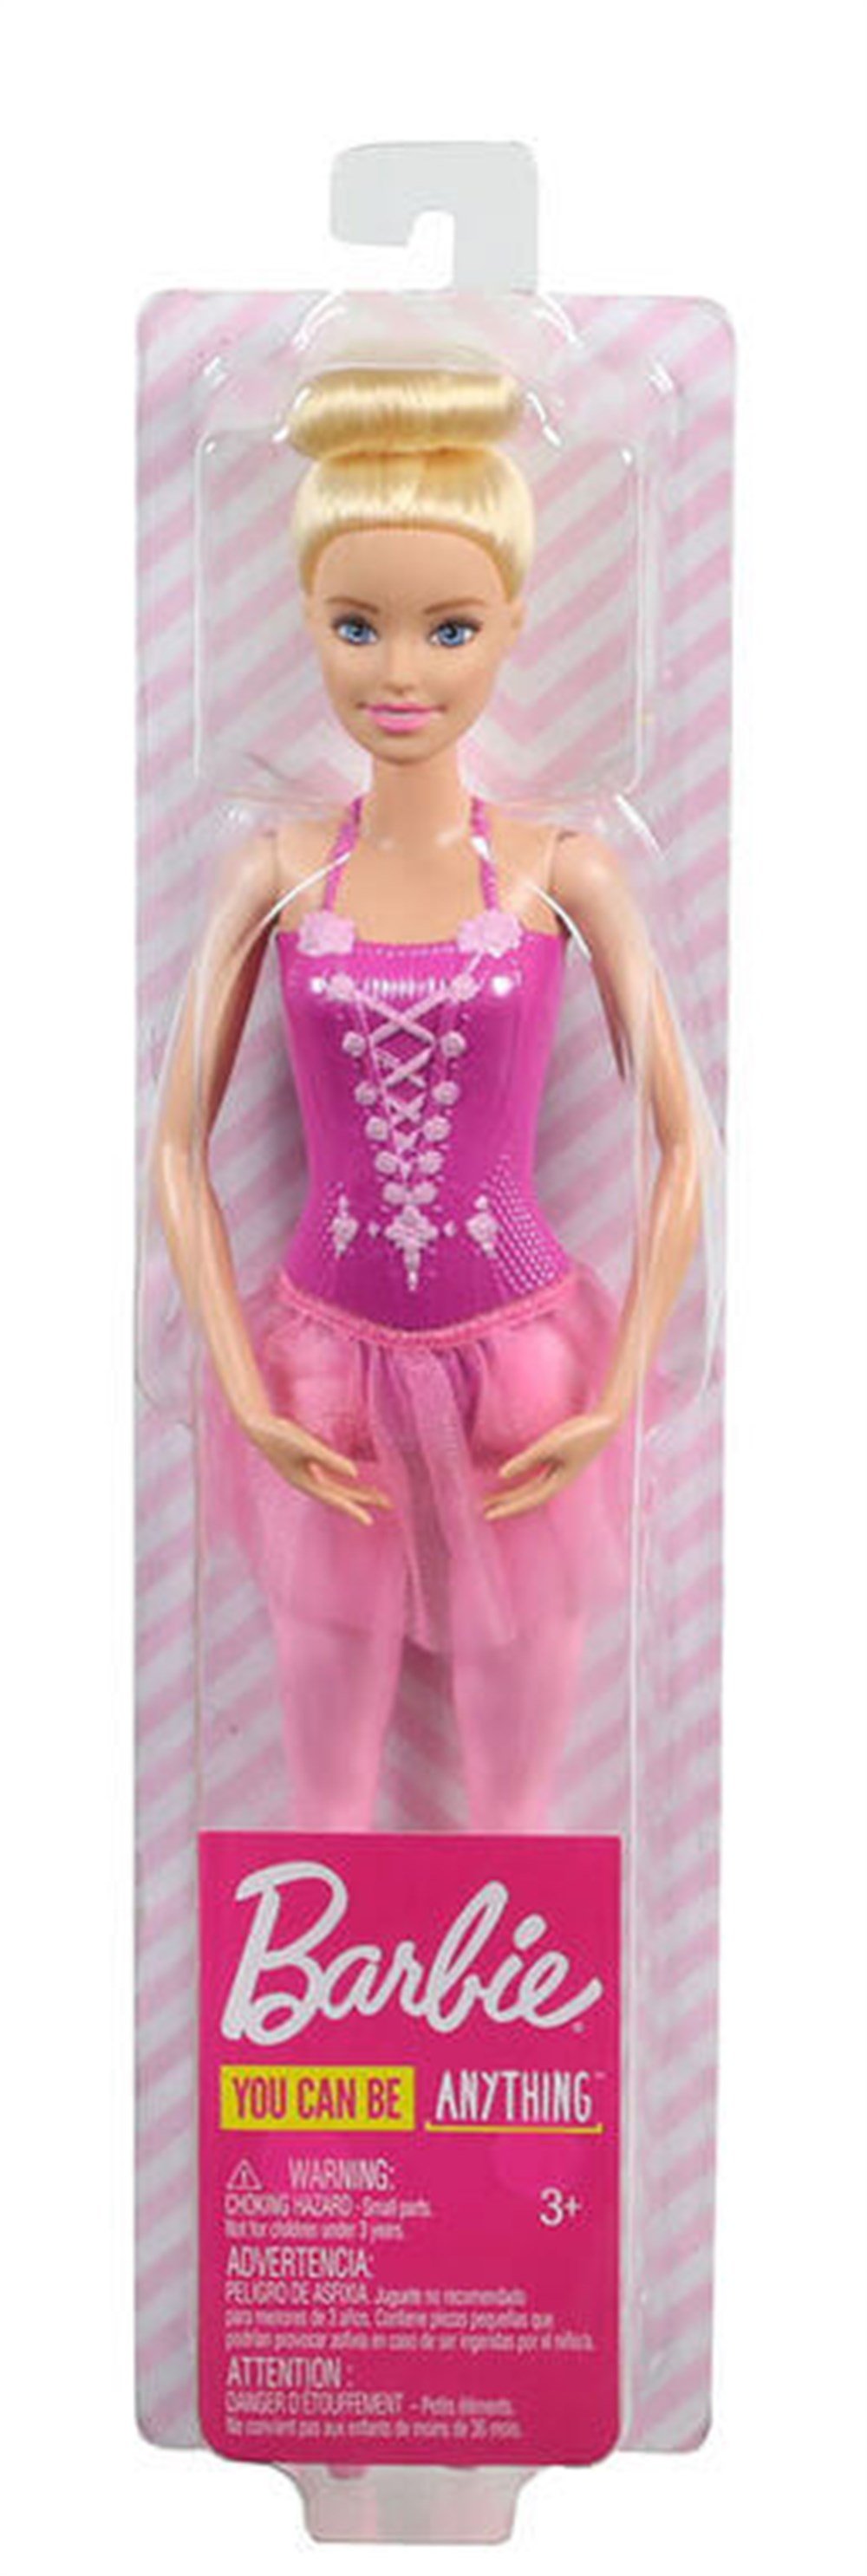 Barbie Balerin Bebekler Sarışın Gjl58-Gjl59